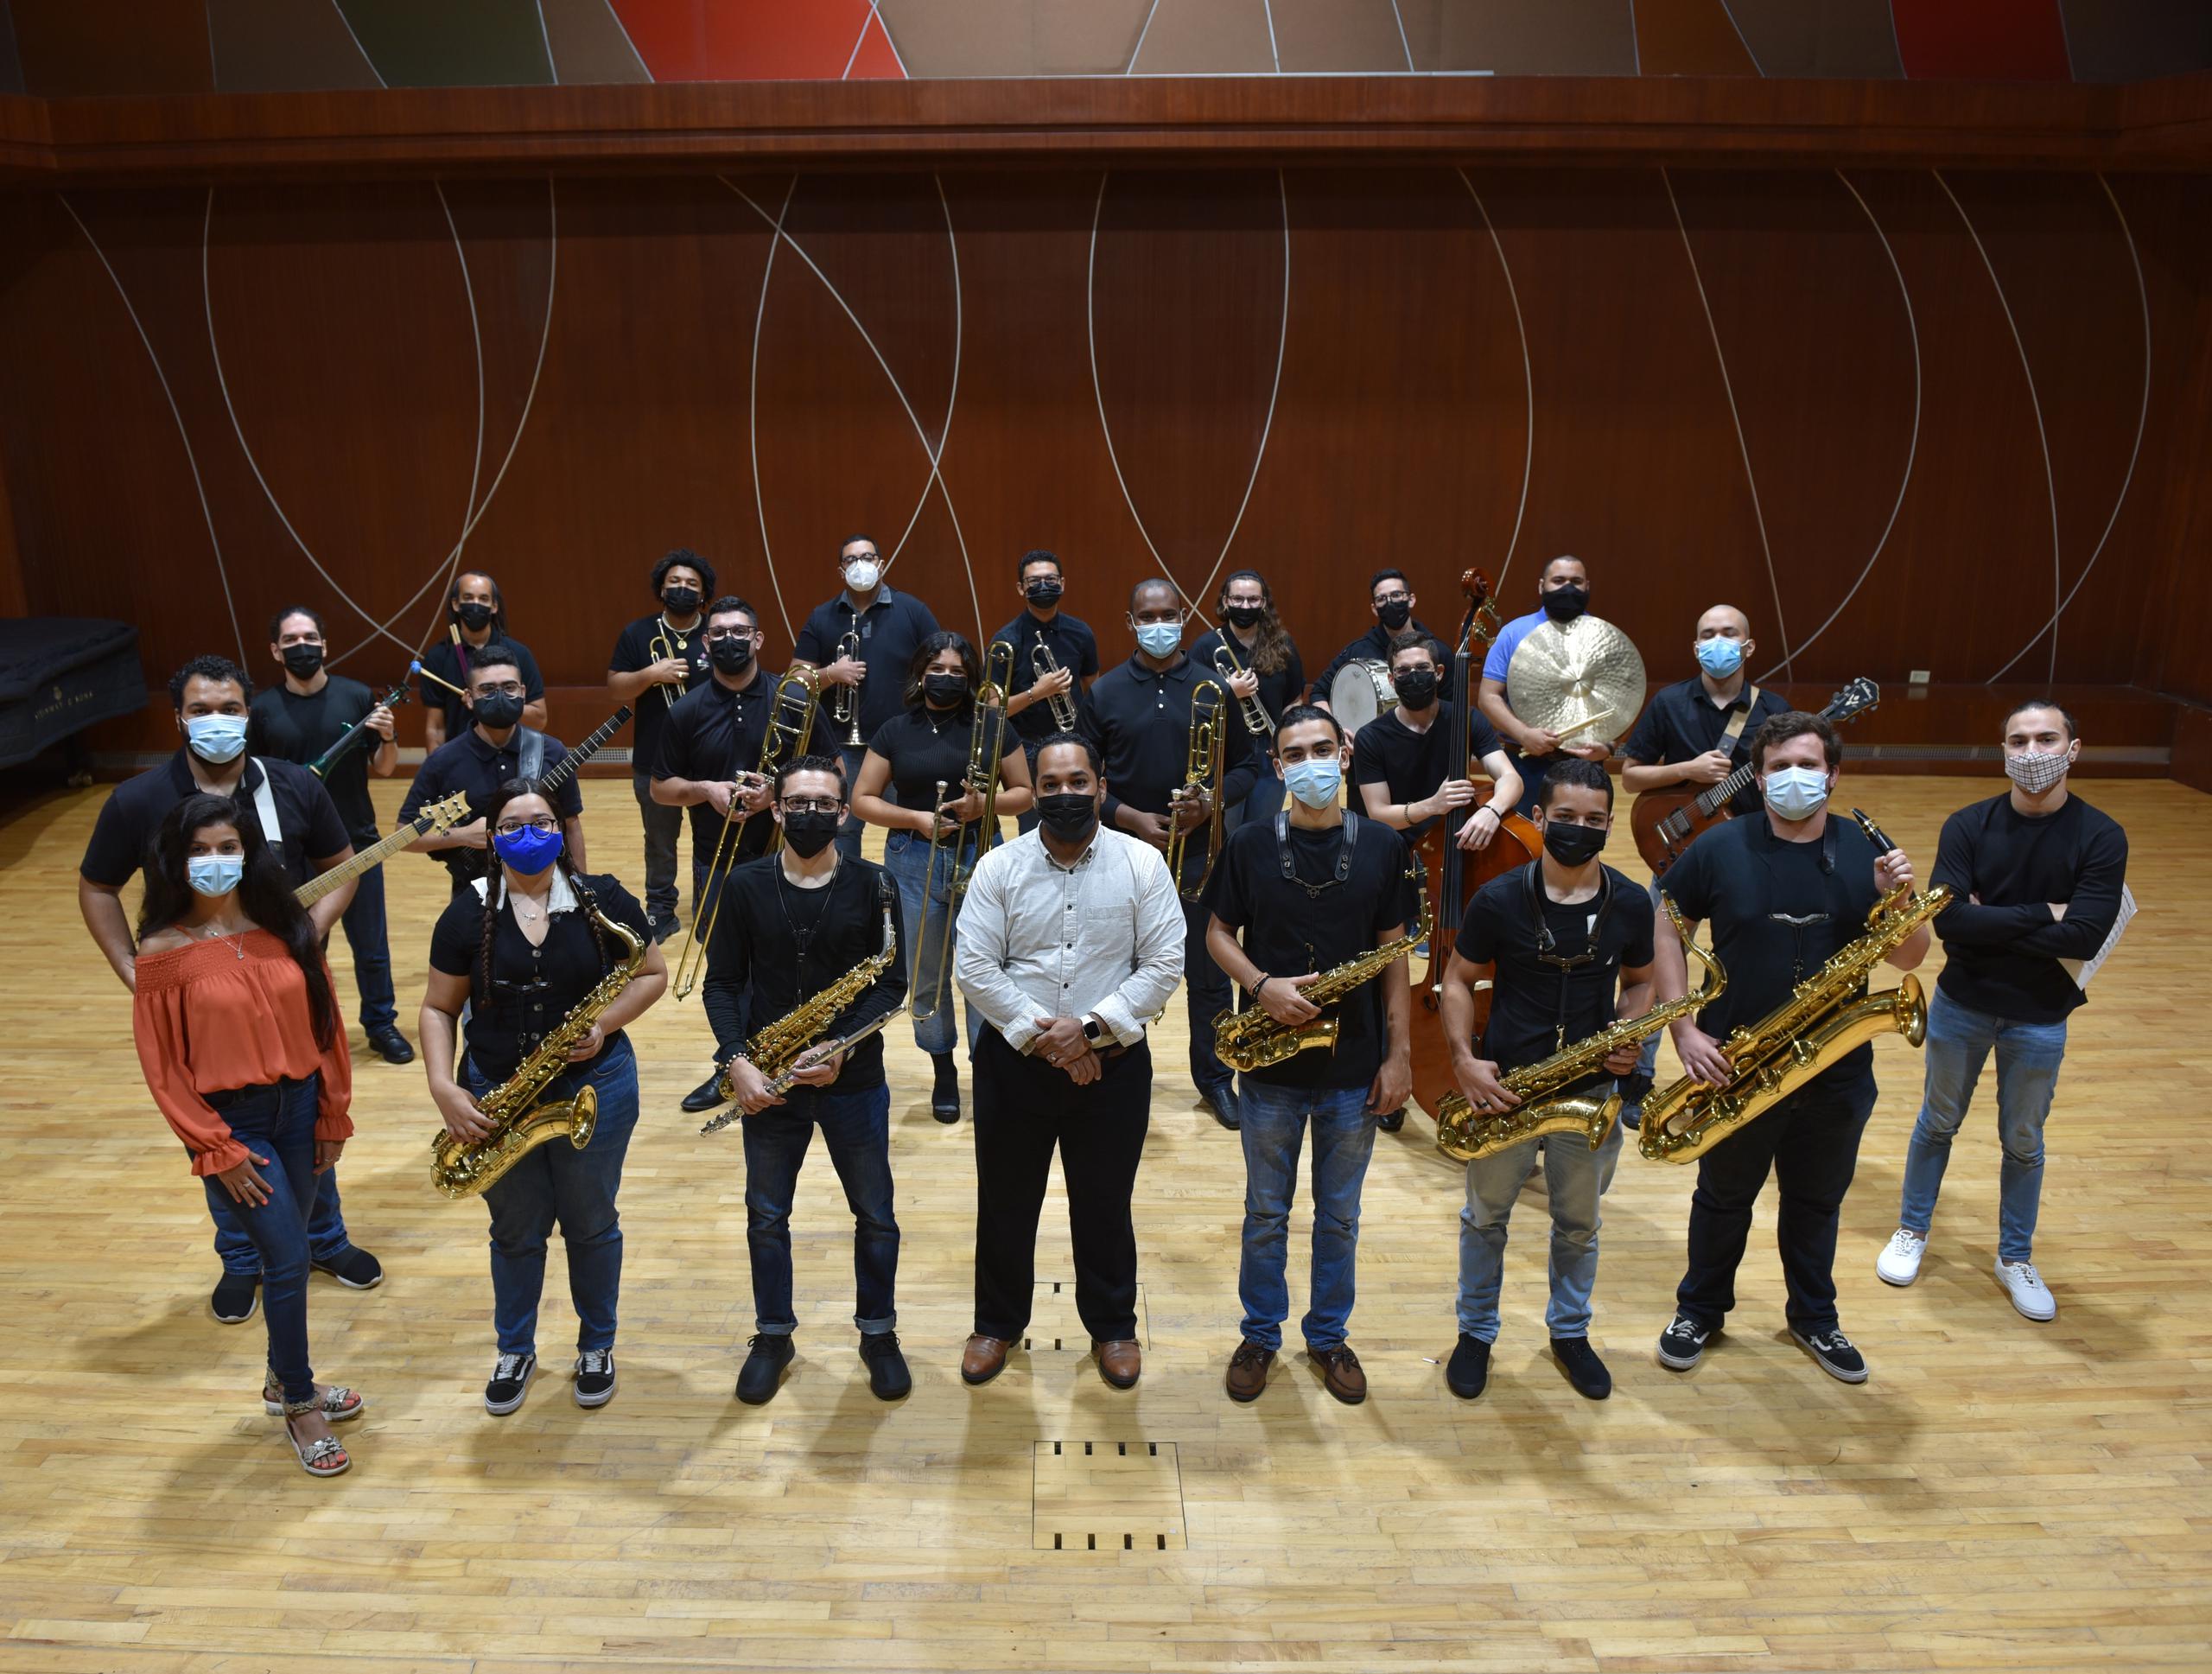 El Concert Jazz Band estará dirigida por el profesor Elías Santos Celpa y contará con la participación especial de la estudiante del Departamento de Canto, Kalinell Sanjurjo.